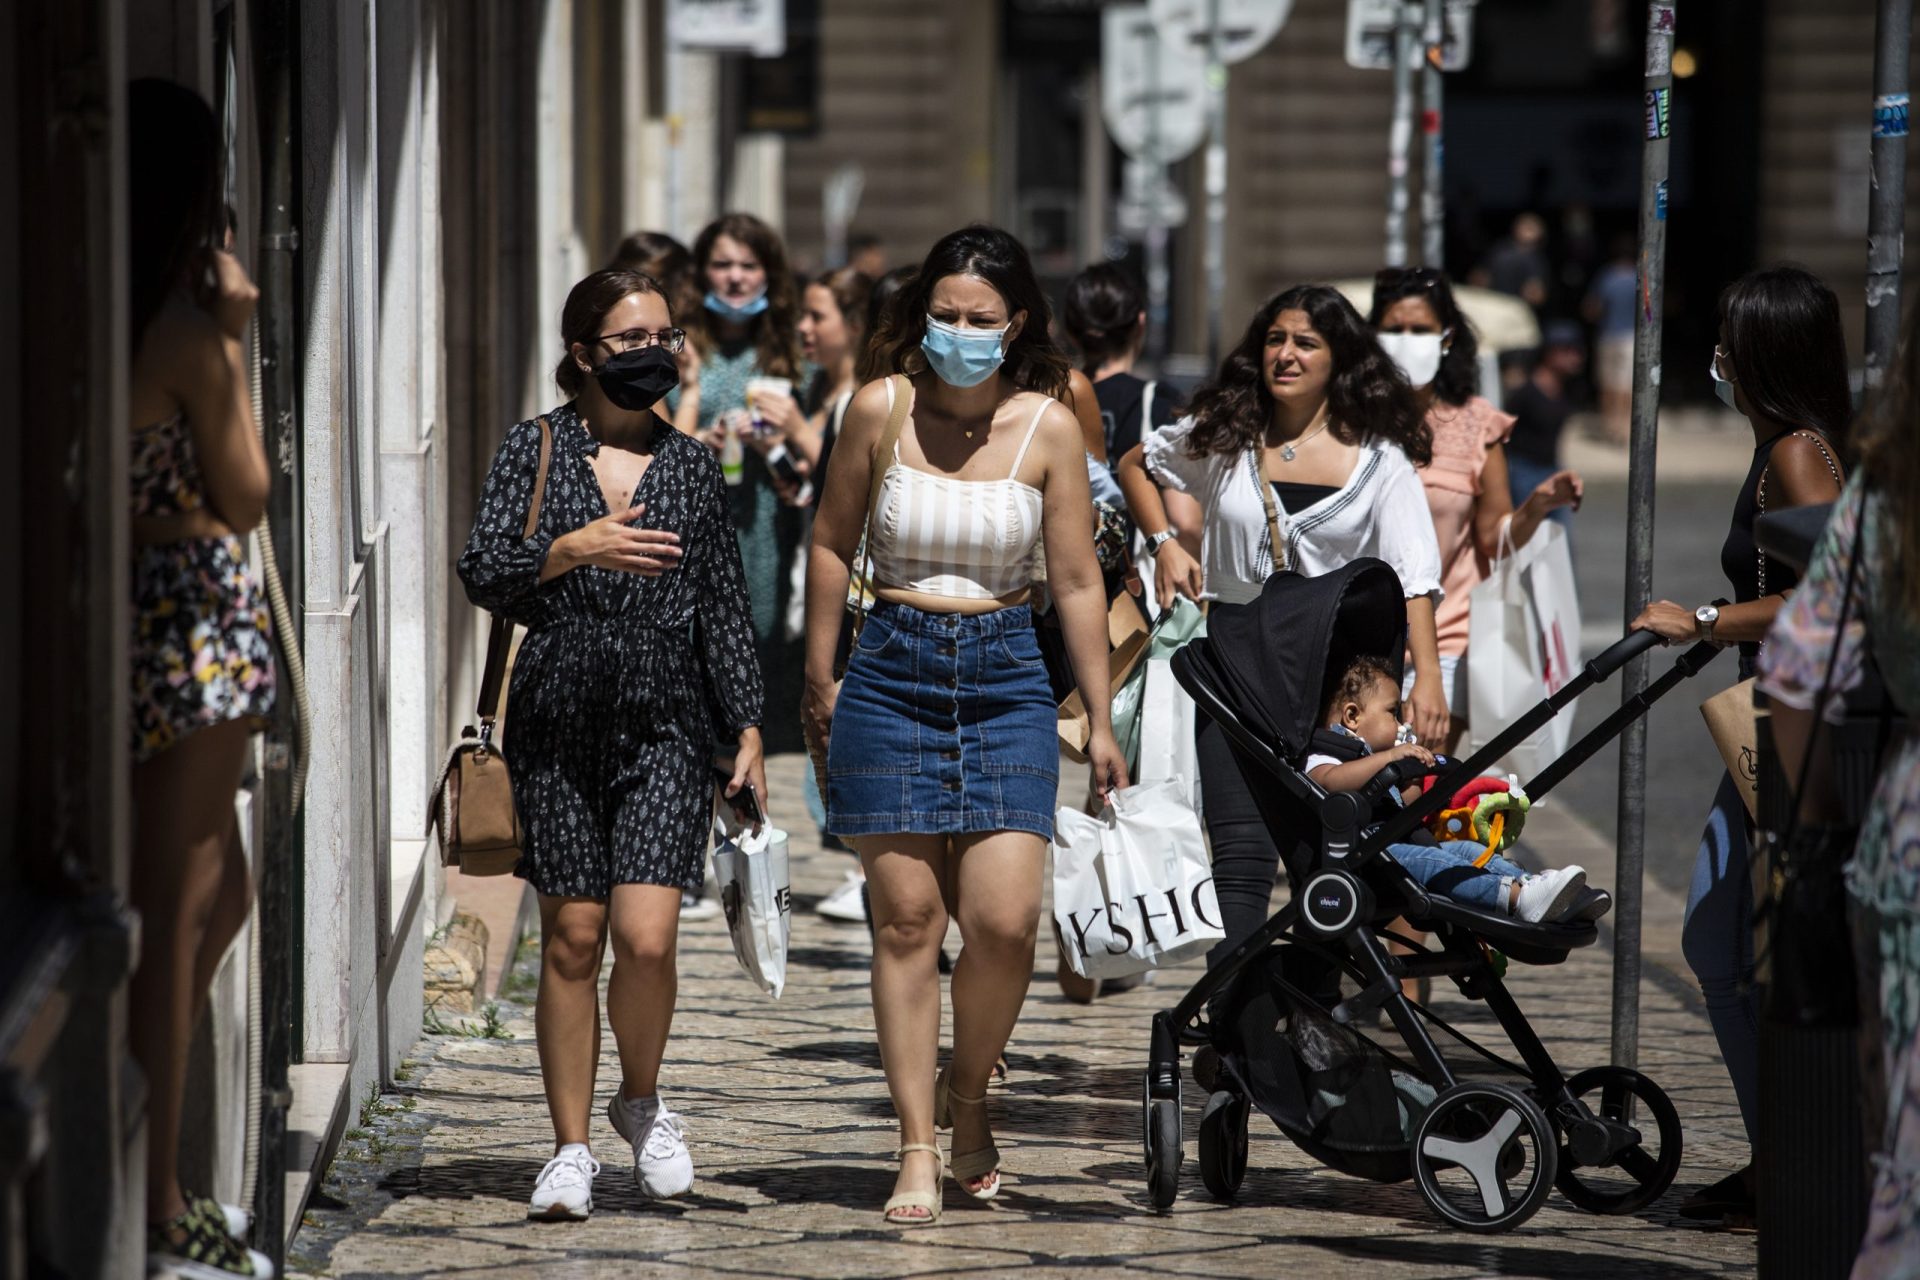 Situação epidemiológica em Portugal entre as mais desfavoráveis na Europa